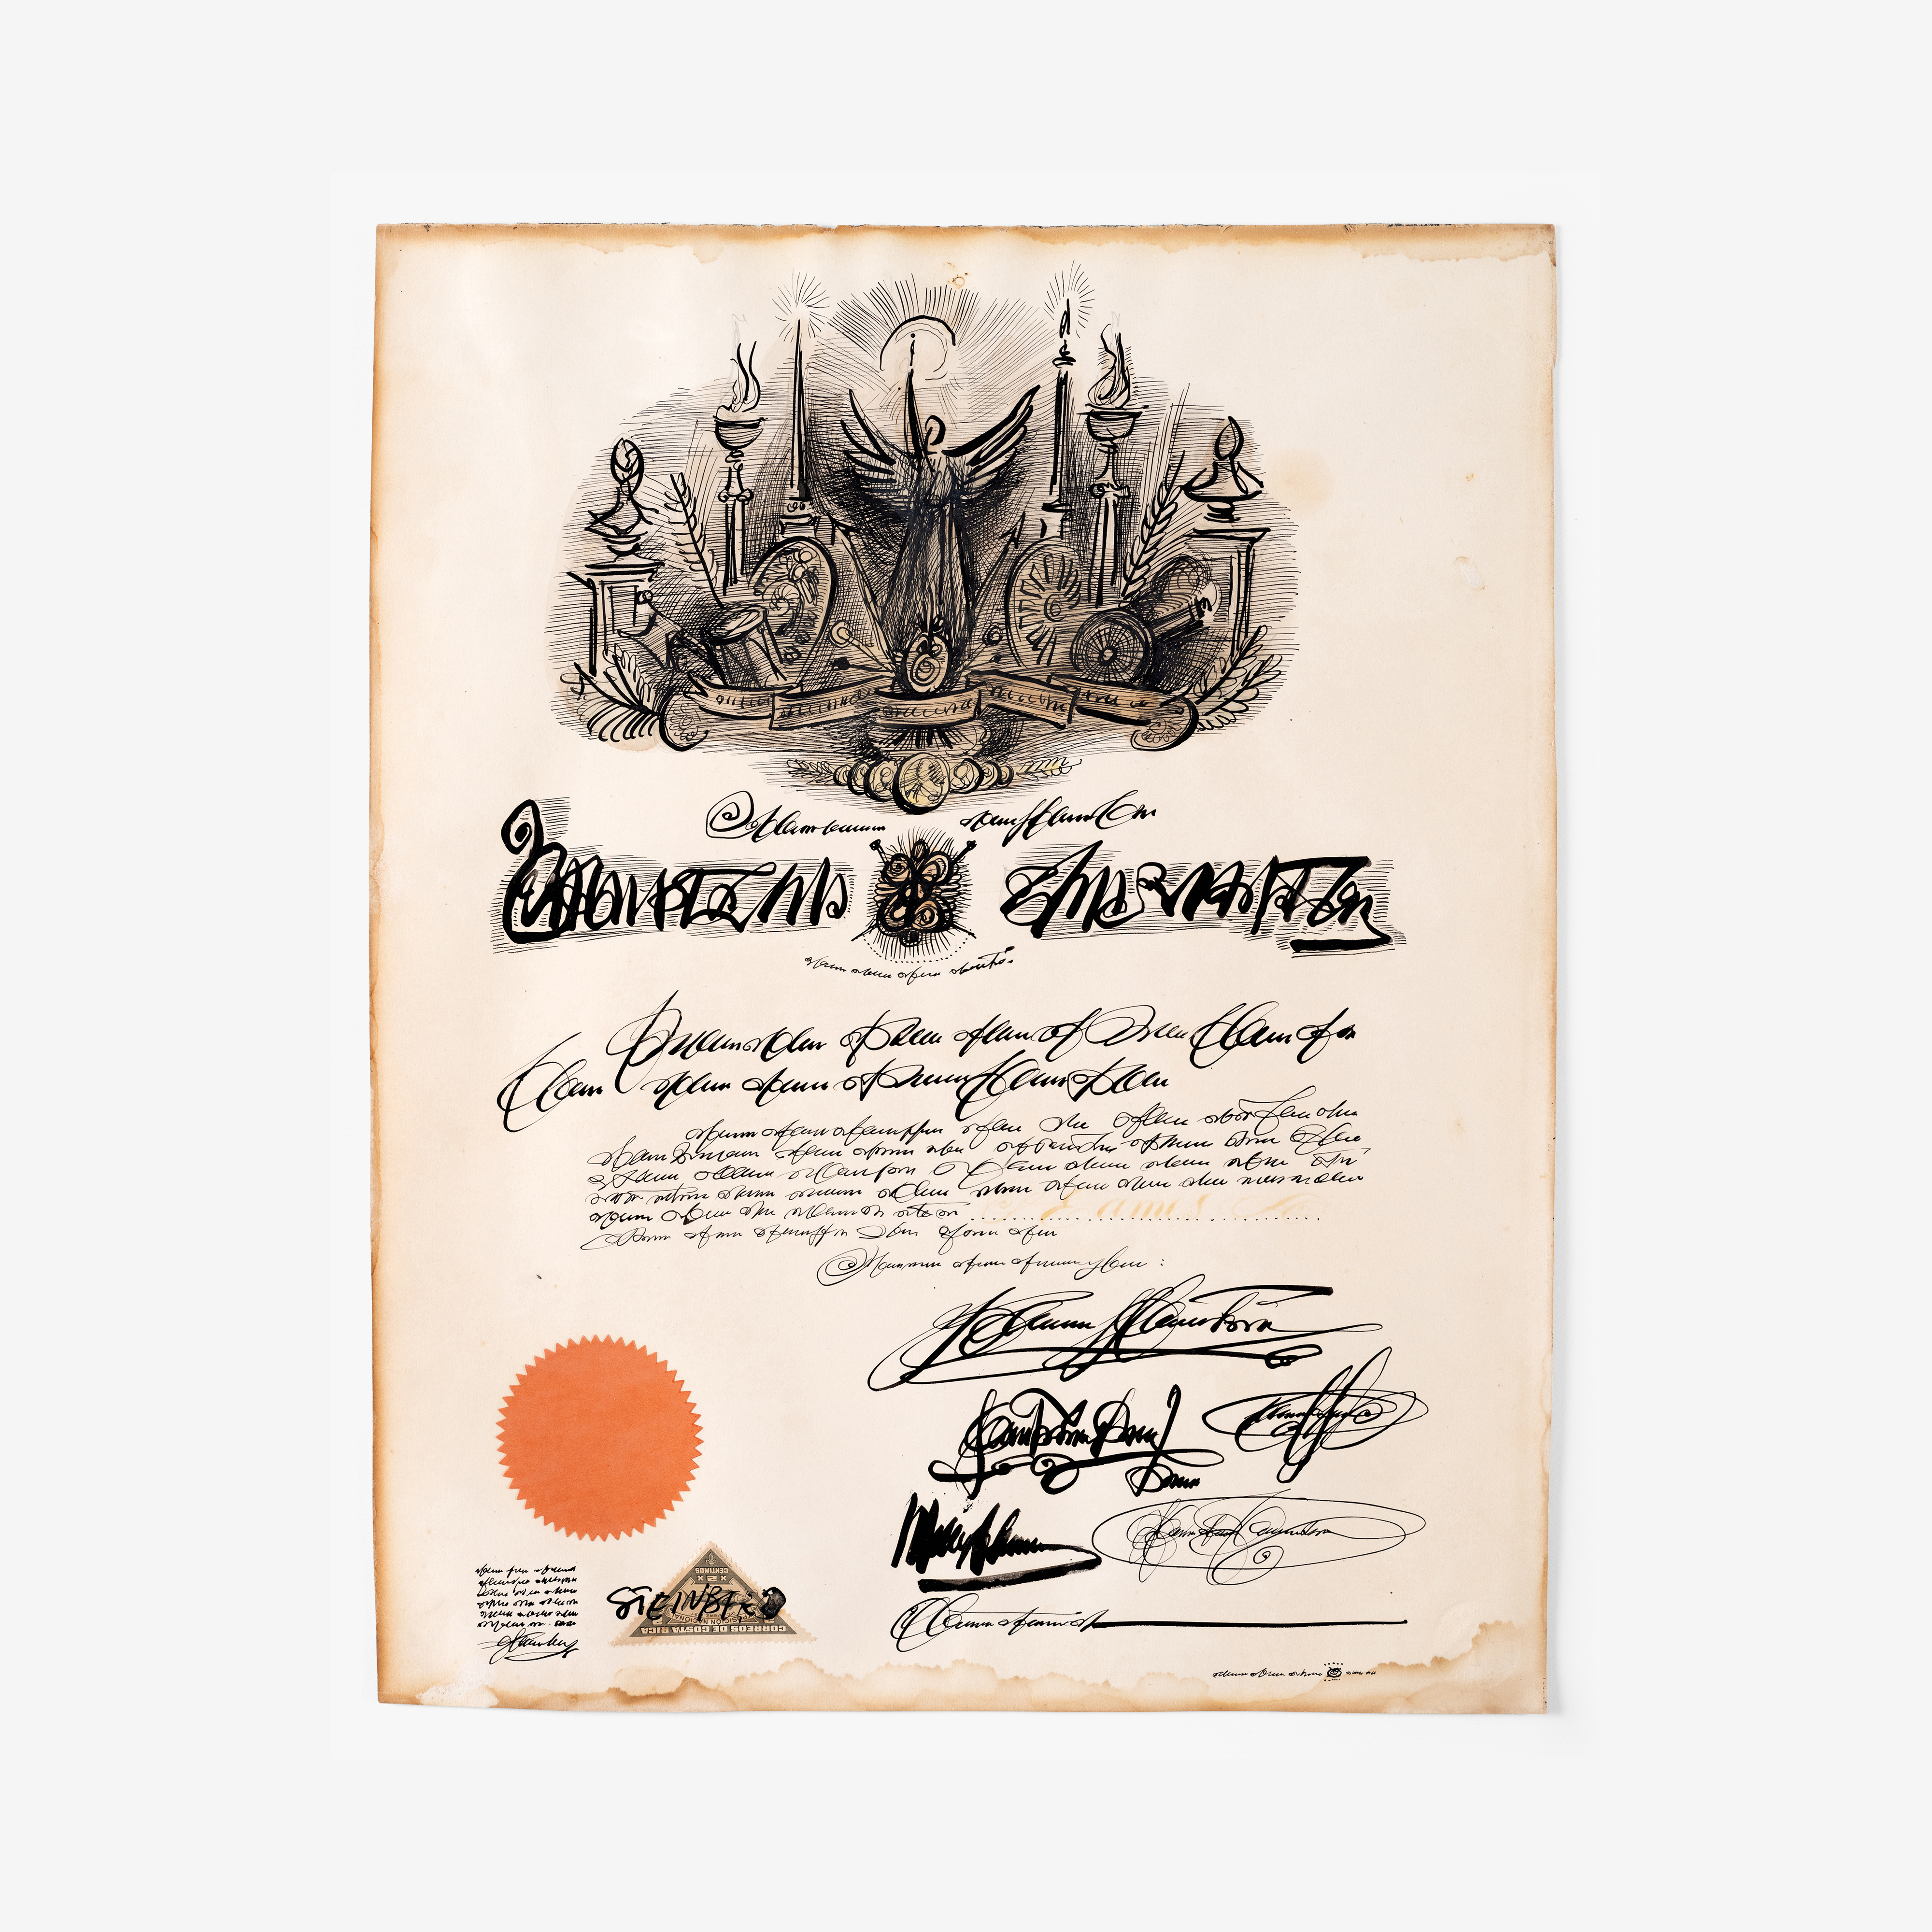 Charles Eames diploma